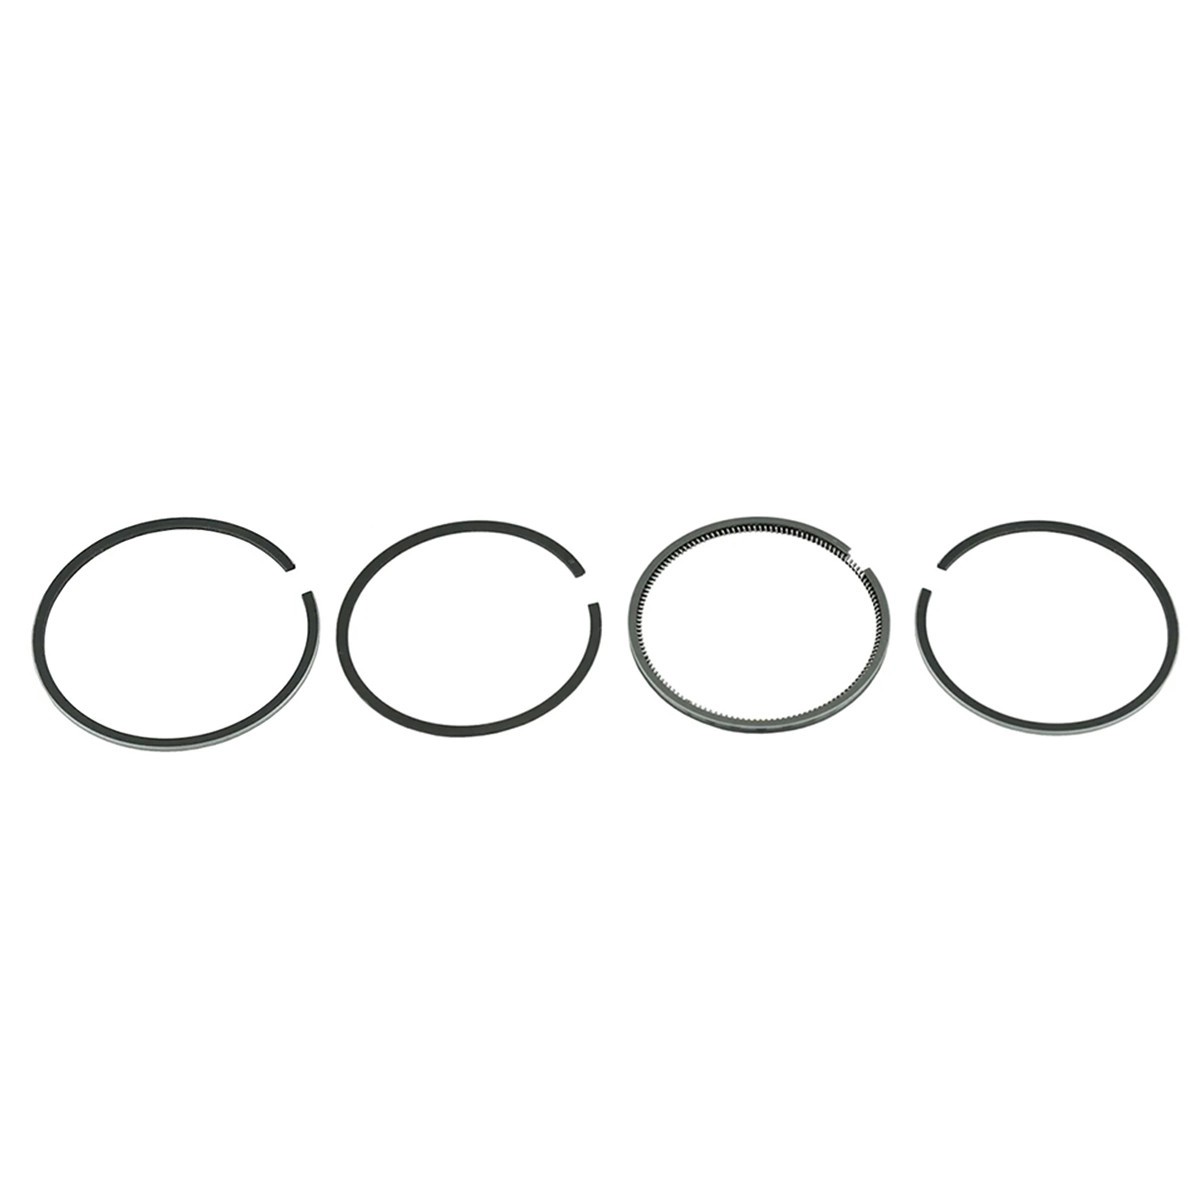 Piston rings / 78 mm / Mitsubishi Ke70 / Iseki TX1300 / STD / (2.50+2.50+2.50+4.00) / 15707801-00